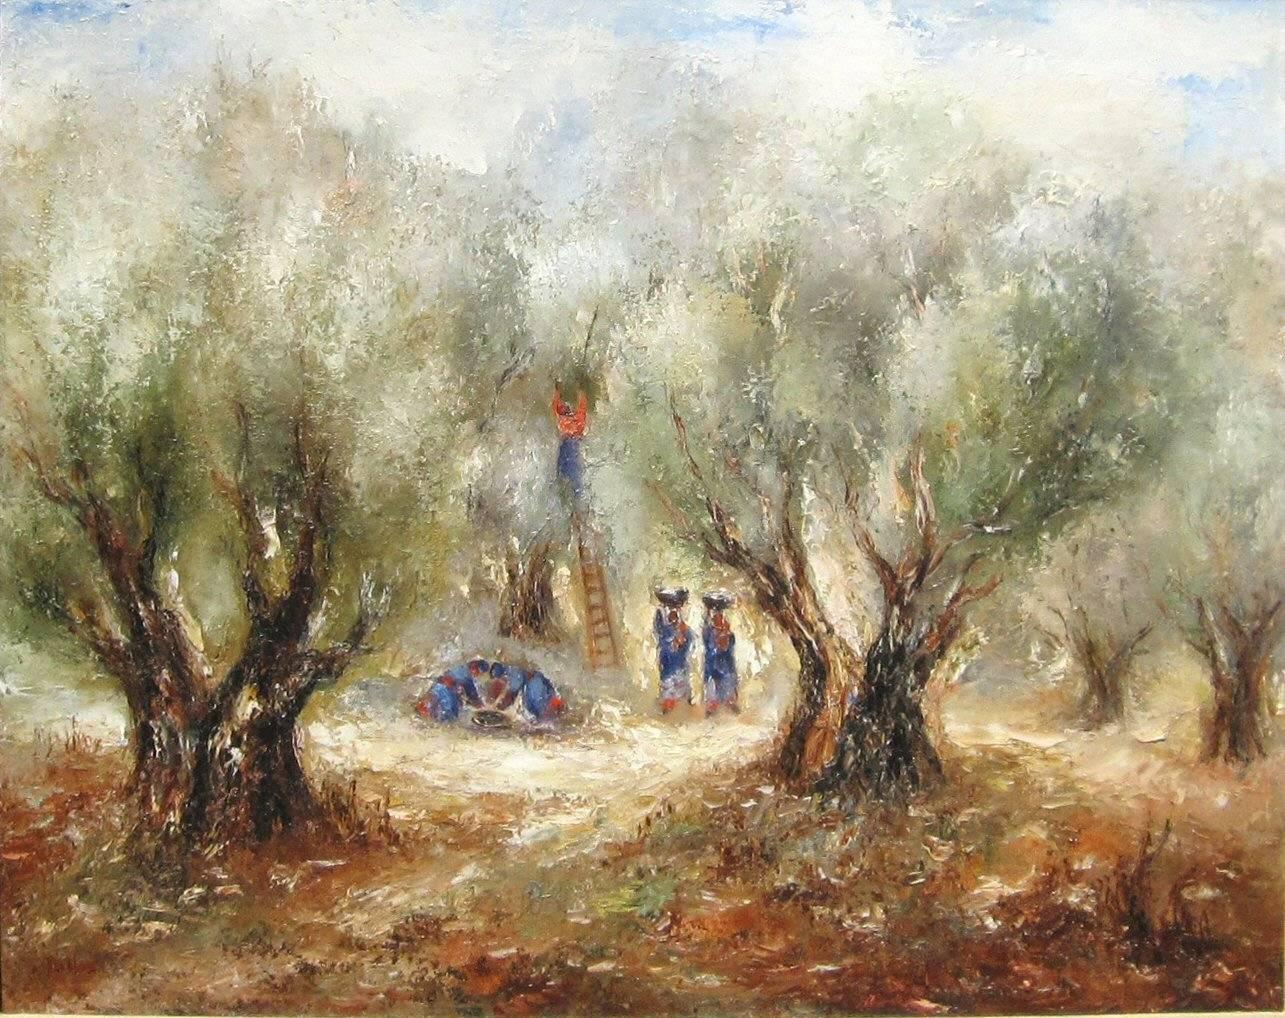 La cueillette des olives par REUVEN RUBIN - Art du 20e siècle, peinture à l'huile